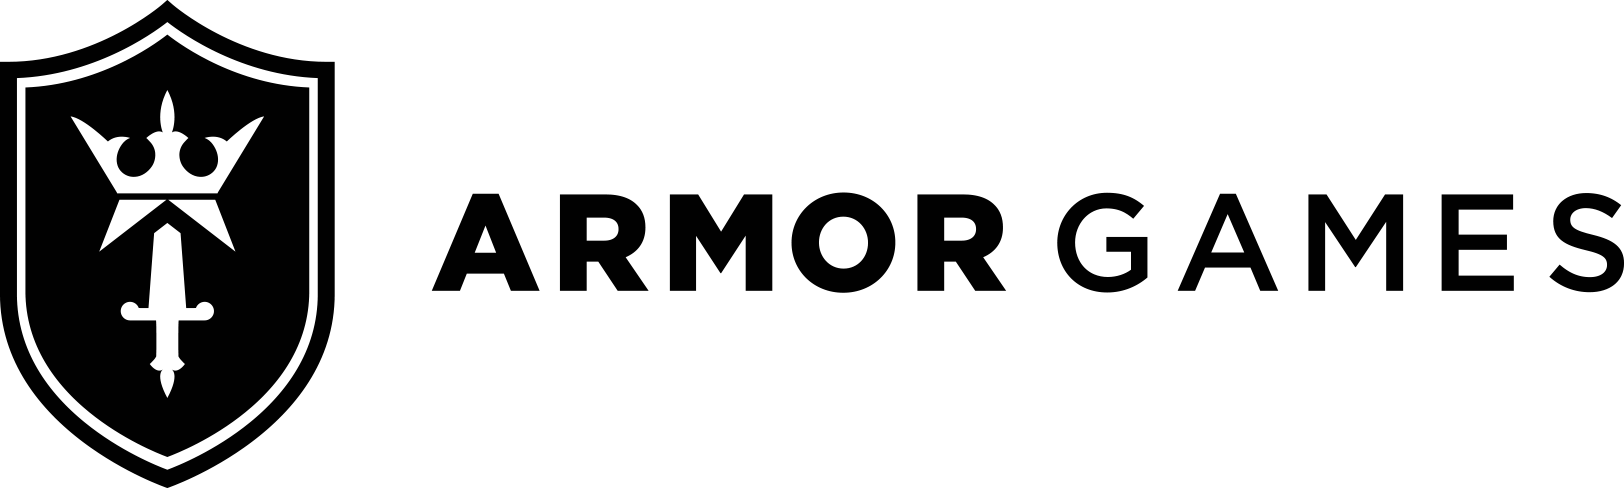 armorgames logo 1 image - IndieDB